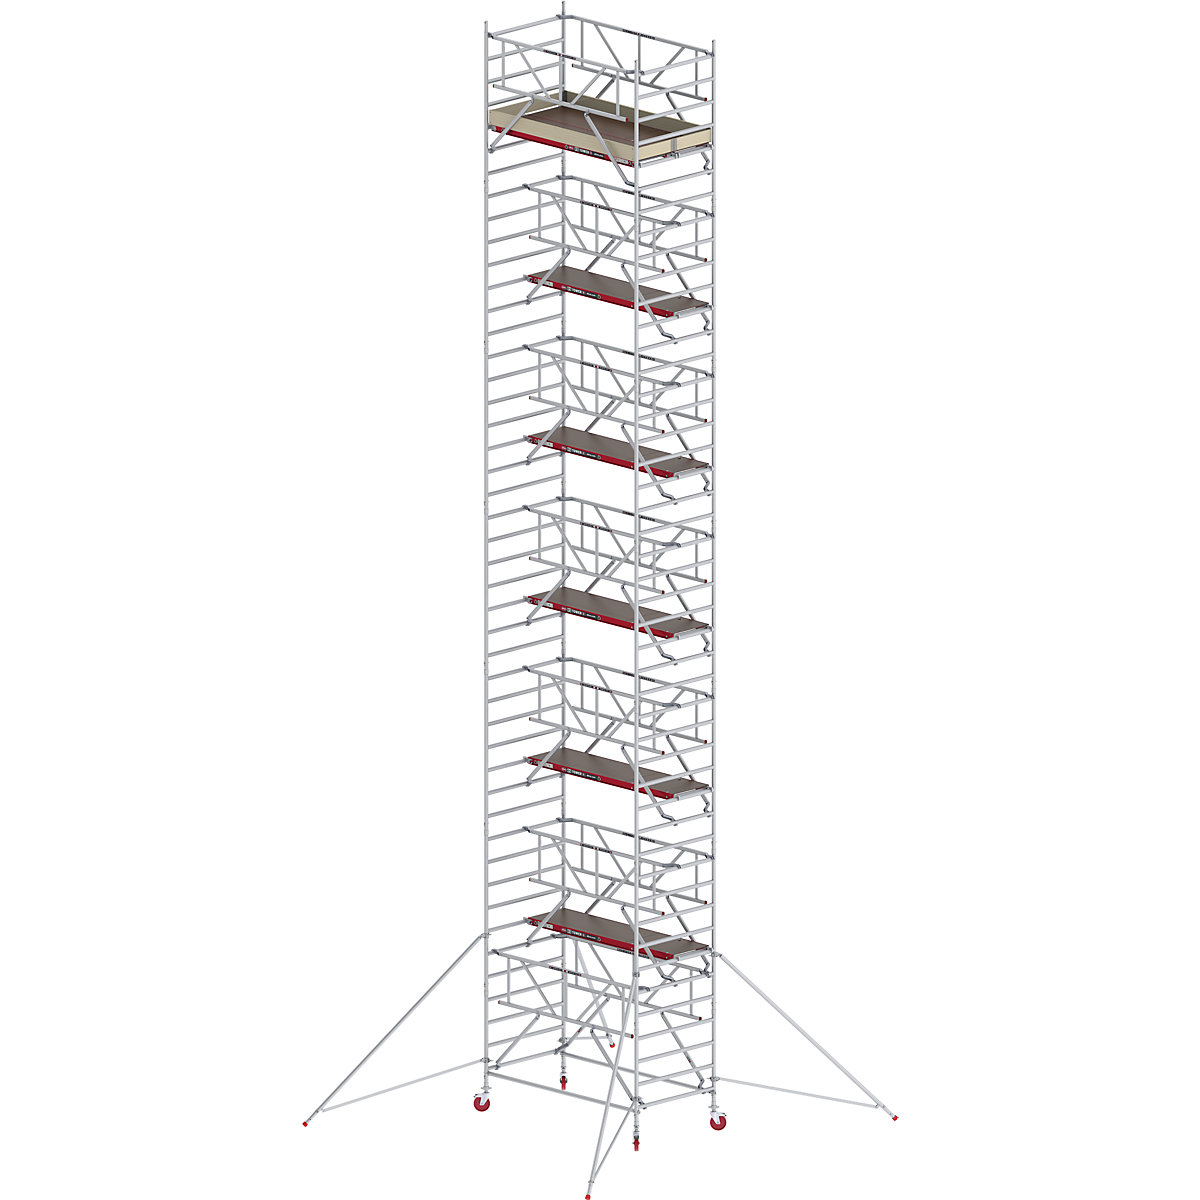 Schelă mobilă RS TOWER 42 lată cu Safe-Quick® – Altrex, platformă din lemn, lungime 2,45 m, înălțime de lucru 14,2 m-8